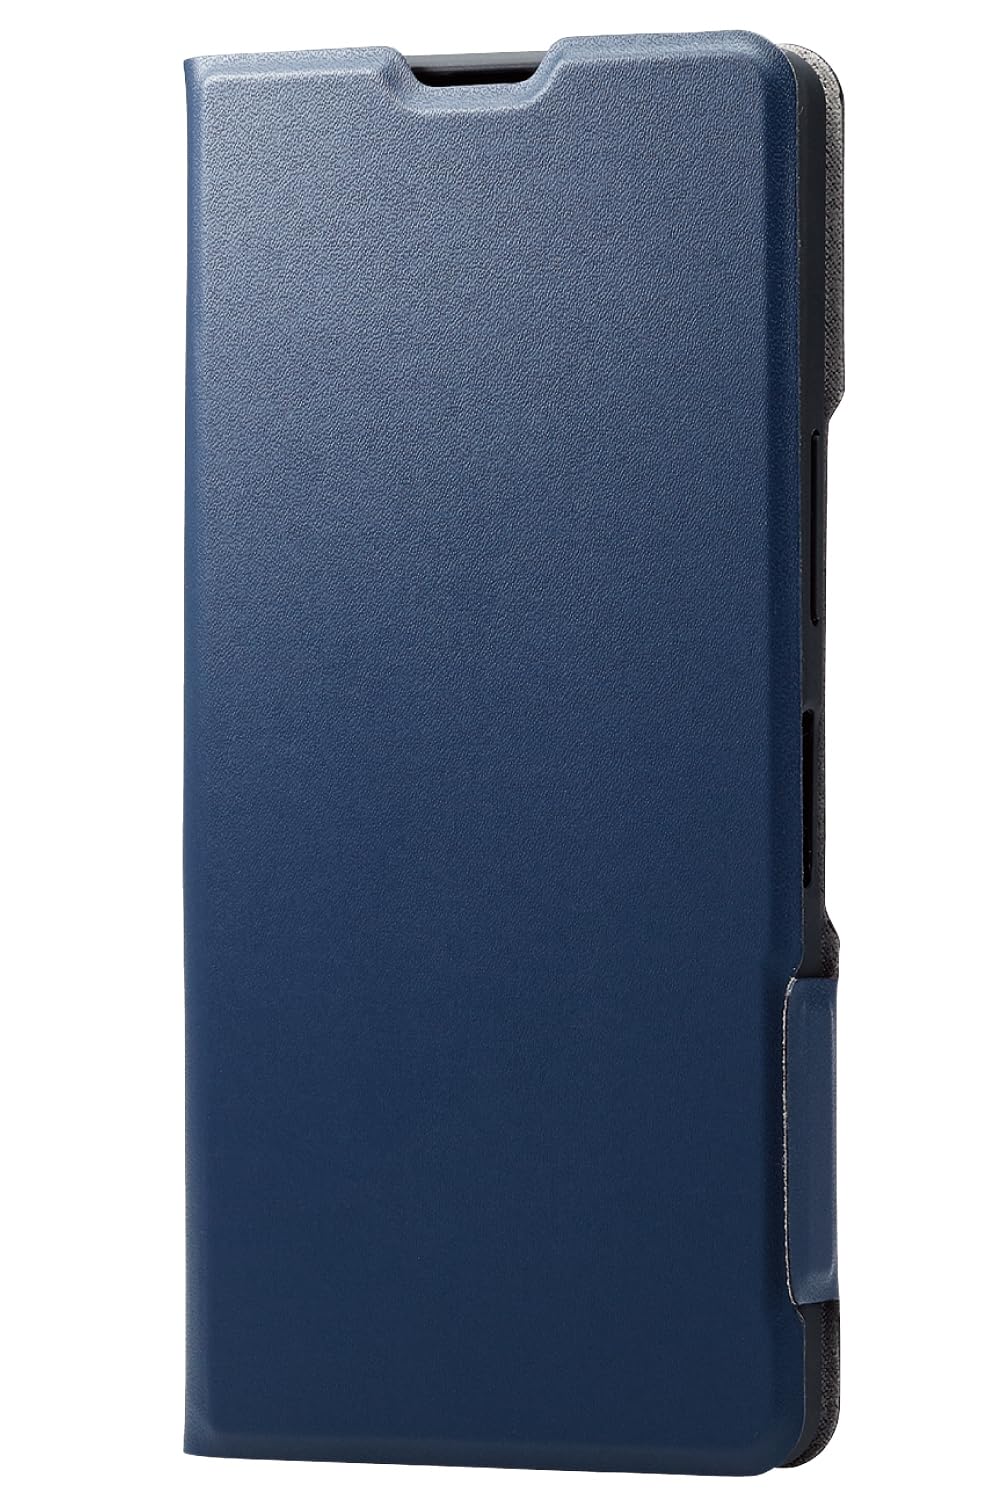 エレコム AQUOS R8 / SH-52D ケース 手帳型 レザー 革 薄型 軽量 UltraSlim カードポケット付き ネイビー PM-S232PLFUNV